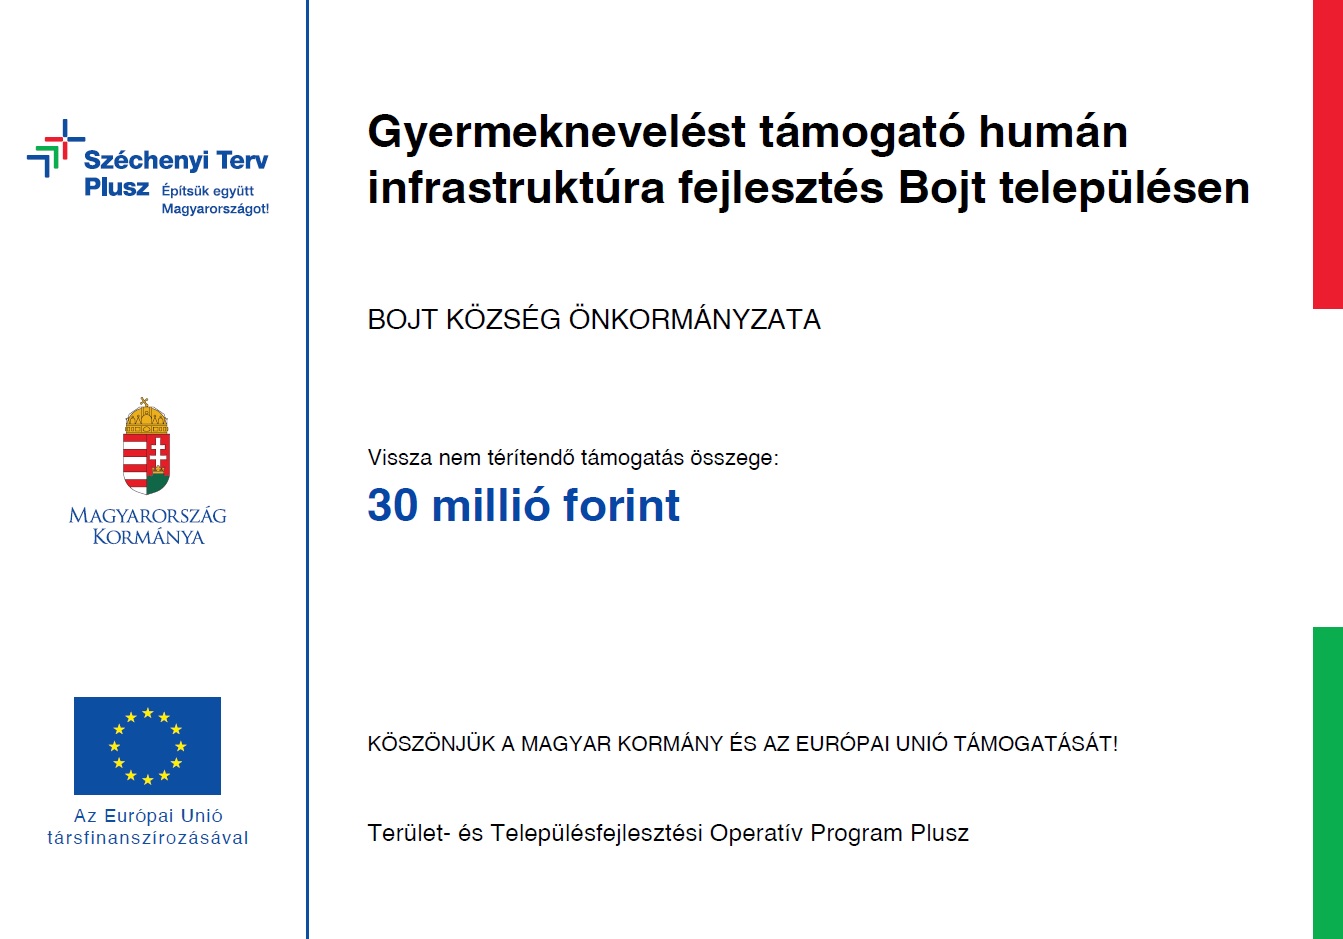 TOP_PLUSZ-3.3.1-21-HB1-2022-00005 - Gyermeknevelést támogató humán infrastruktúra fejlesztése Bojt településen